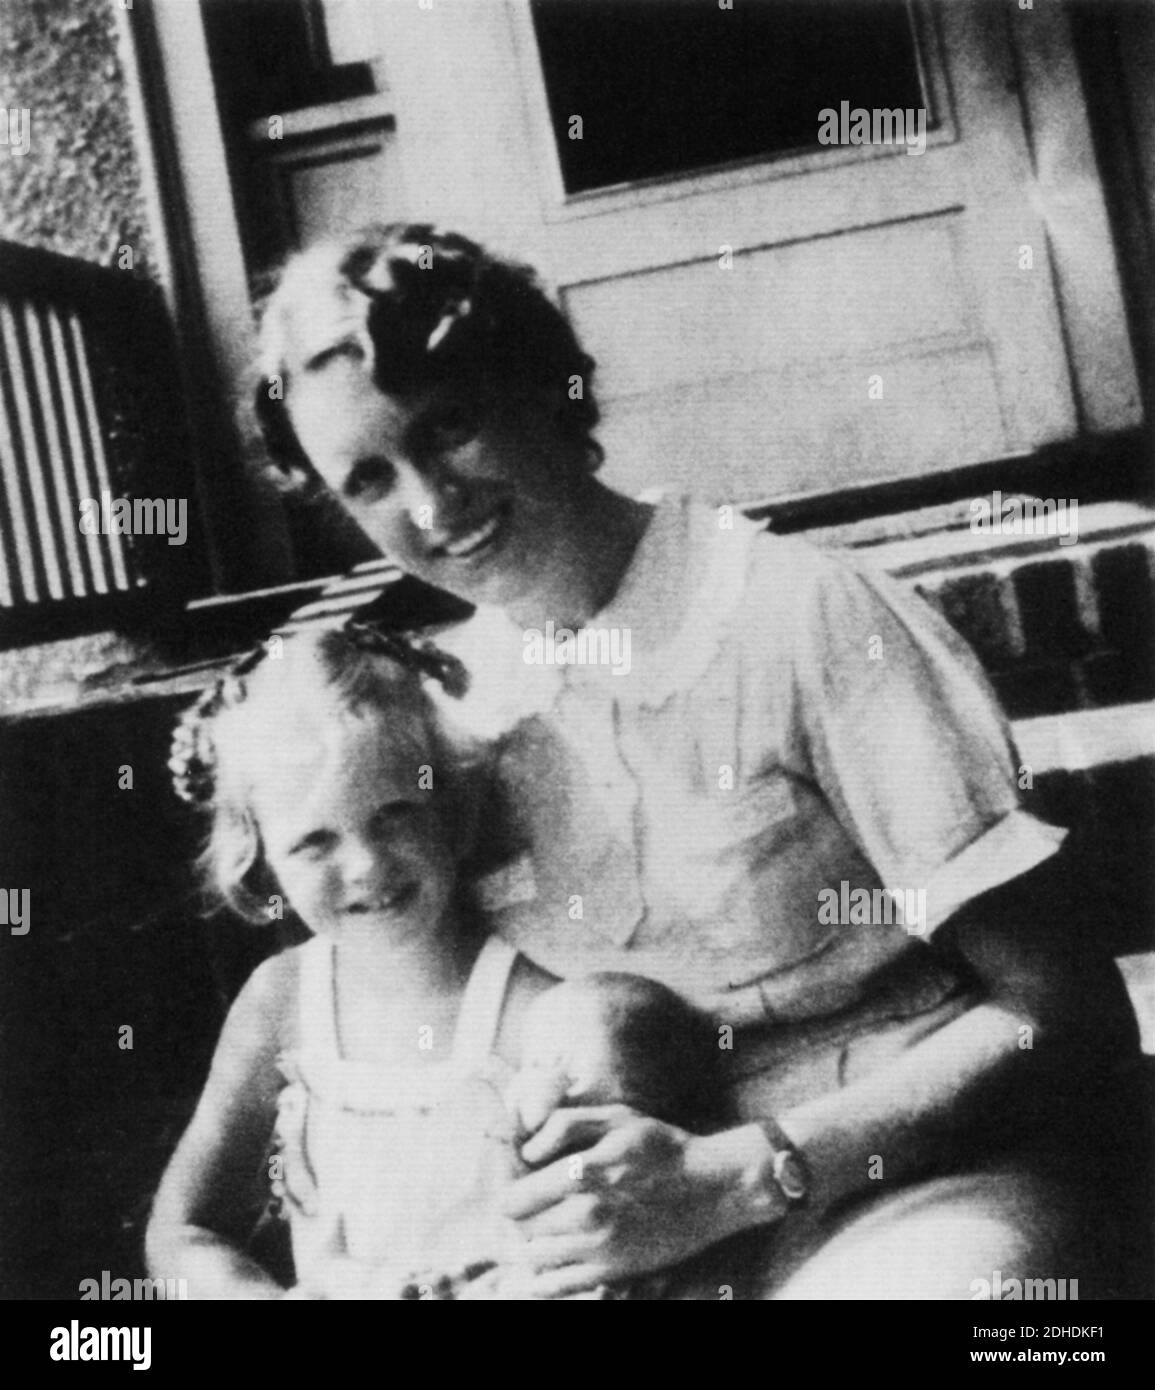 1937, agosto, Winthrop, Mass., U.S.A.: La celebrata donna poeta americana SYLVIA PLATH (Boston 1932 - Londra 1963 ), moglie del poeta Ted hughes, Quando era un bambino con la madre Aurelia Schober Plath - POESIA - POESIA - POETESSA - POETA - sorriso - sorriso - suicidio - suicidio - suicida - ritutrice - scrittore - letteratura - letterato - madre figuria - mamma - personalità quando era bambino - personalità da giovani bambini bambino da piccolo da piccoli --- Archivio GBB Foto Stock